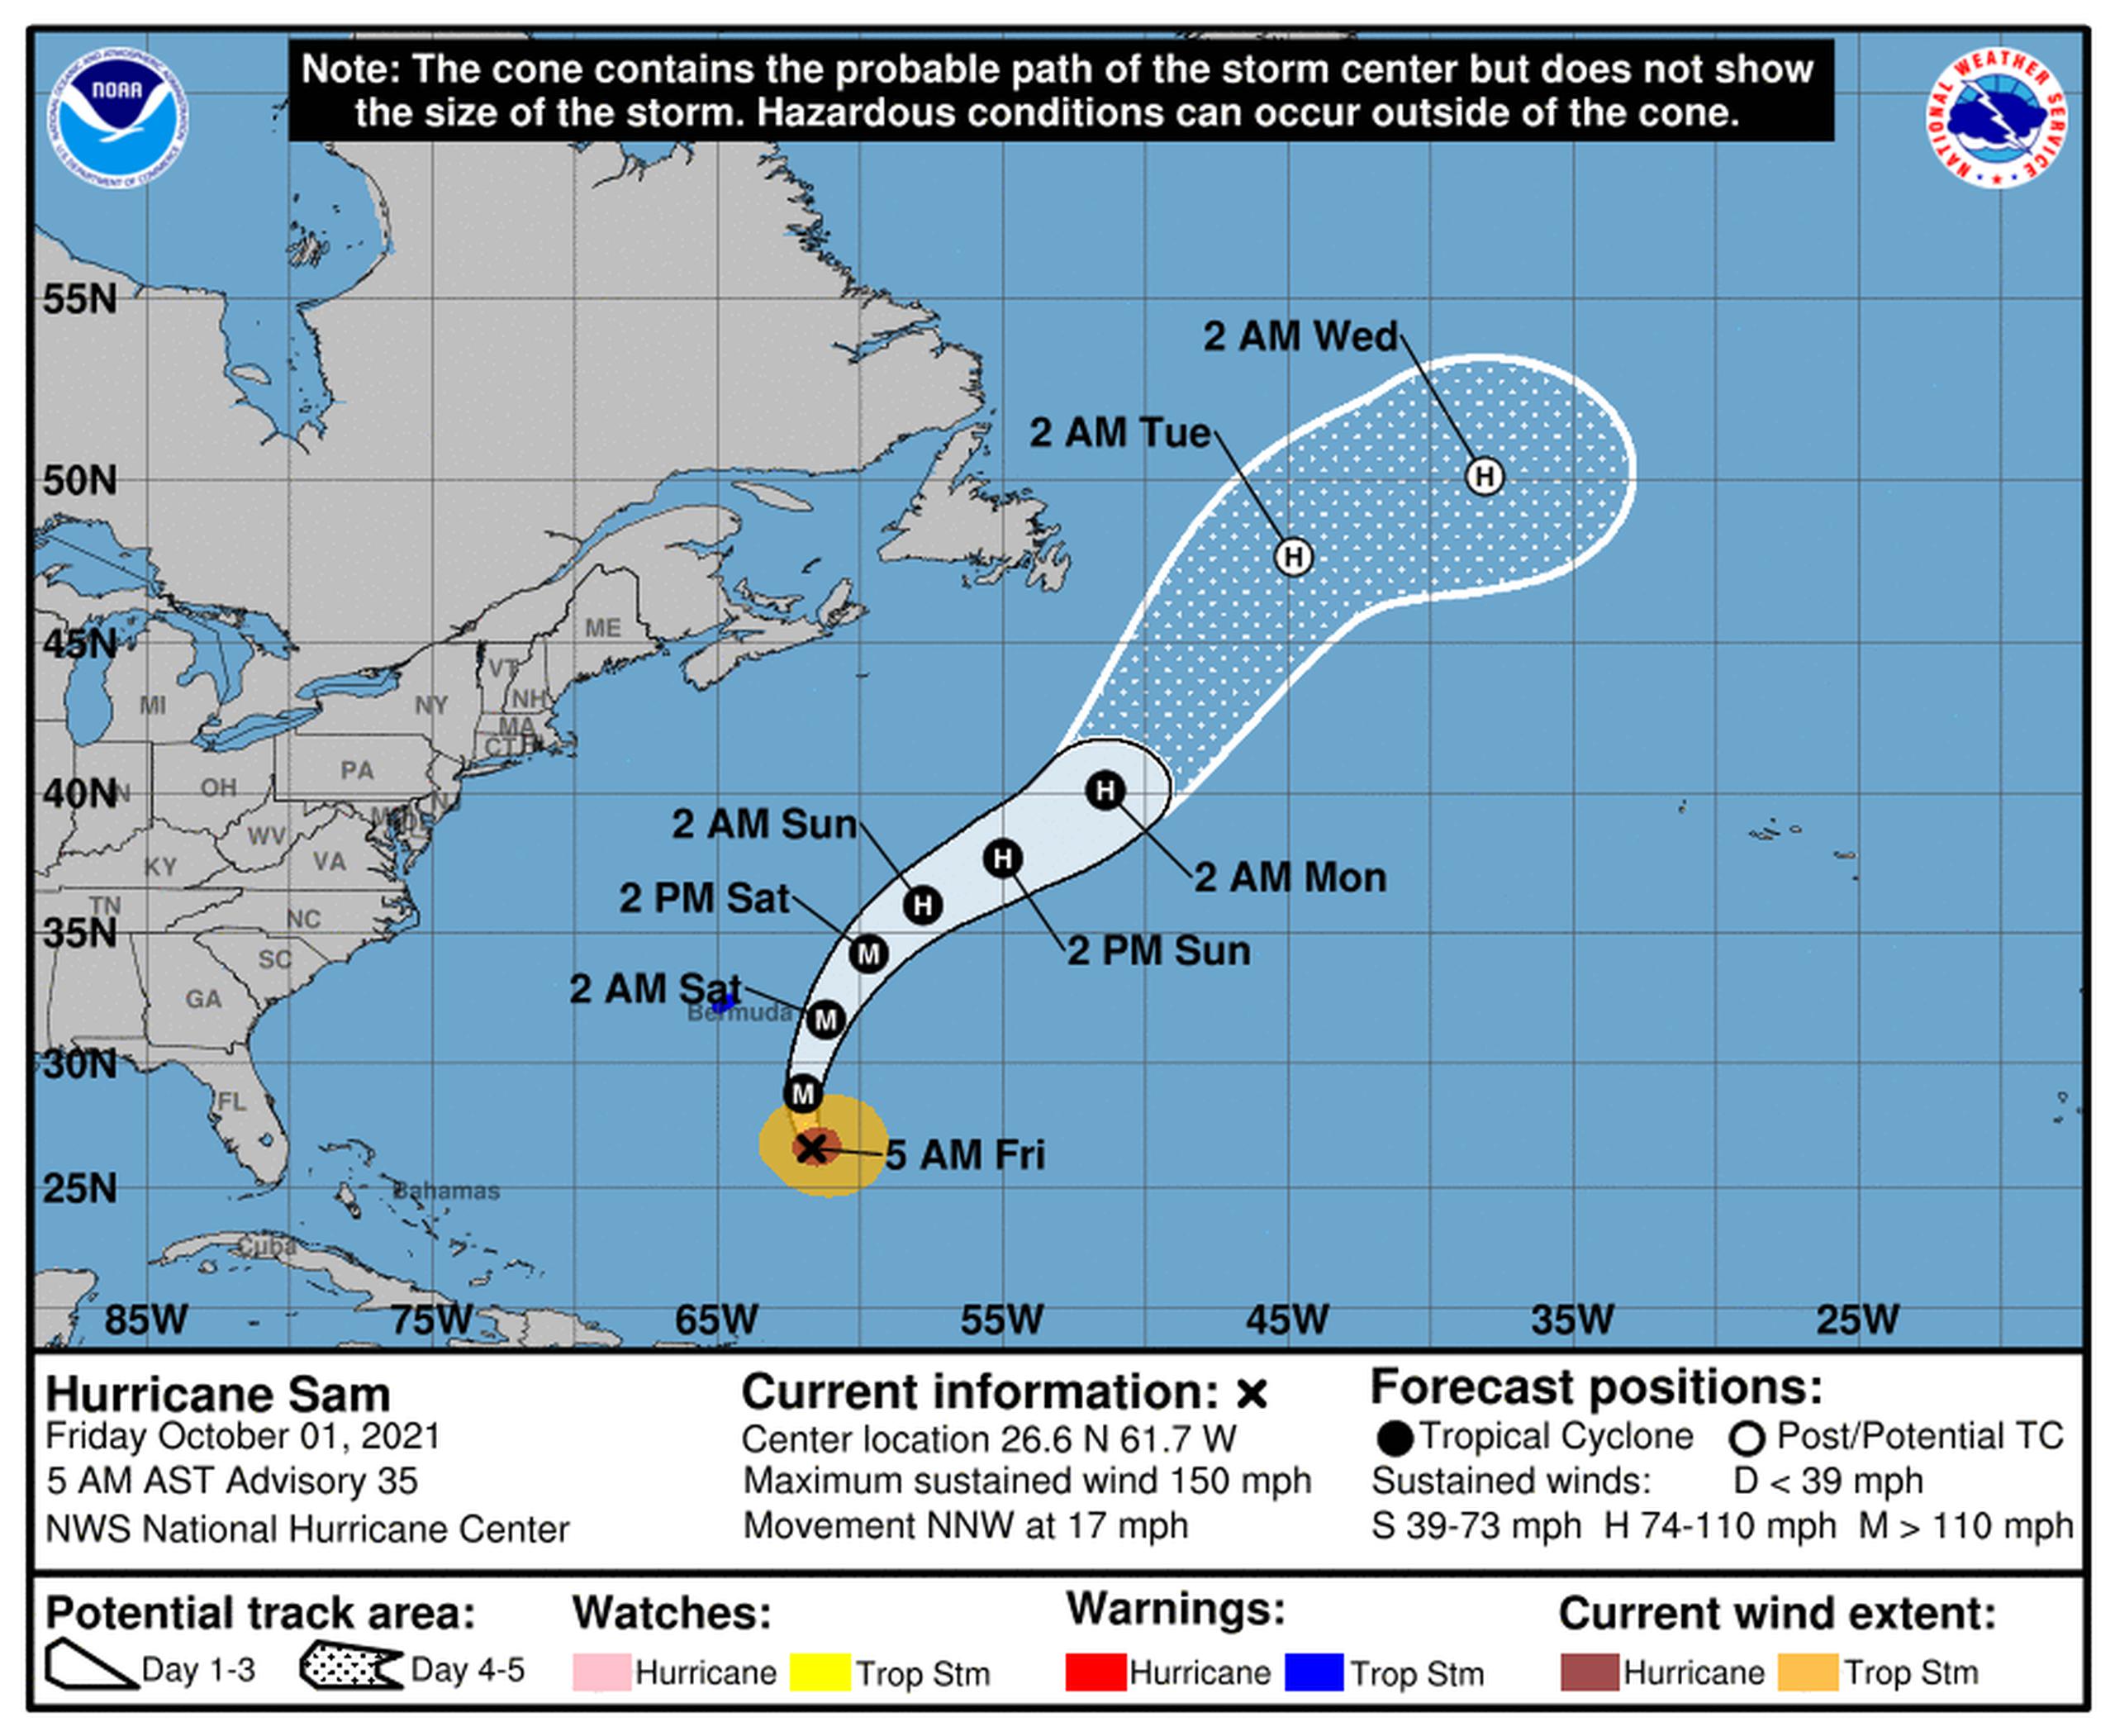 Pronóstico del huracán Sam emitido a las 5:00 de la mañana por el Centro Nacional de Huracanes el 1 de octubre de 2021.